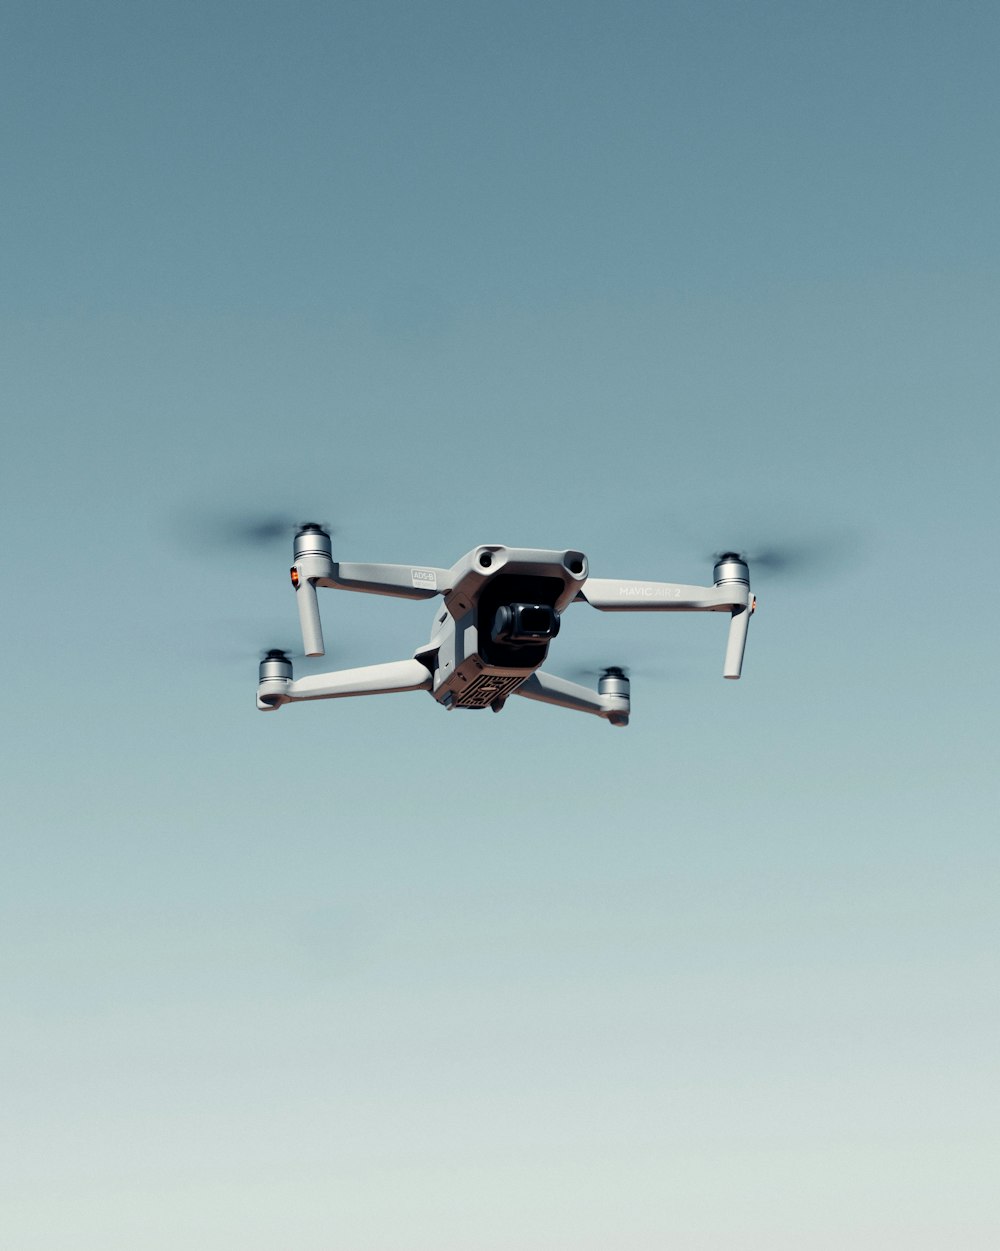 Drone in bianco e nero che vola sotto il cielo blu durante il giorno